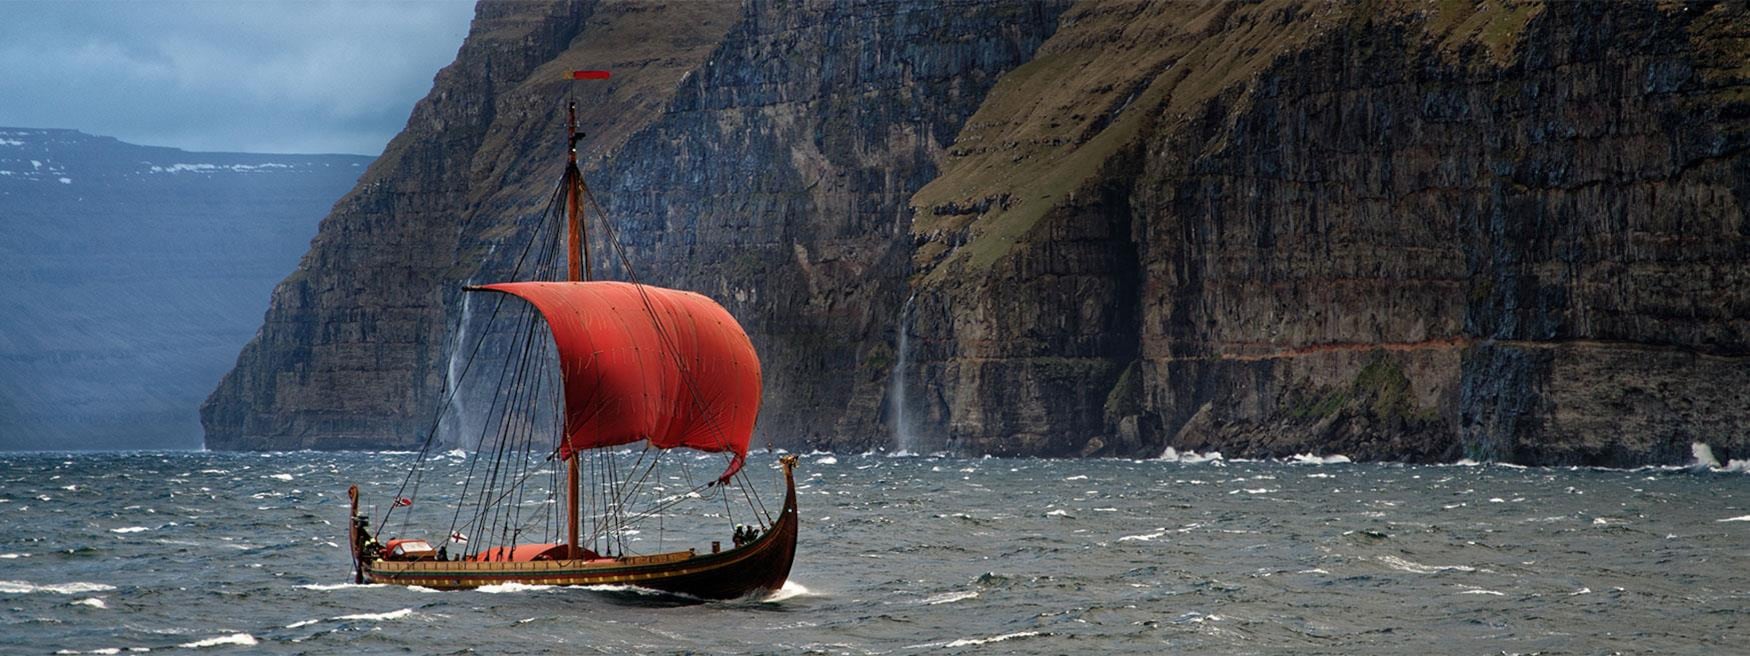 La reconstrucción del barco vikingo Skuldevev 2, 'Corcel de los mares', navegando de Dinamarca a Dublín en 2007